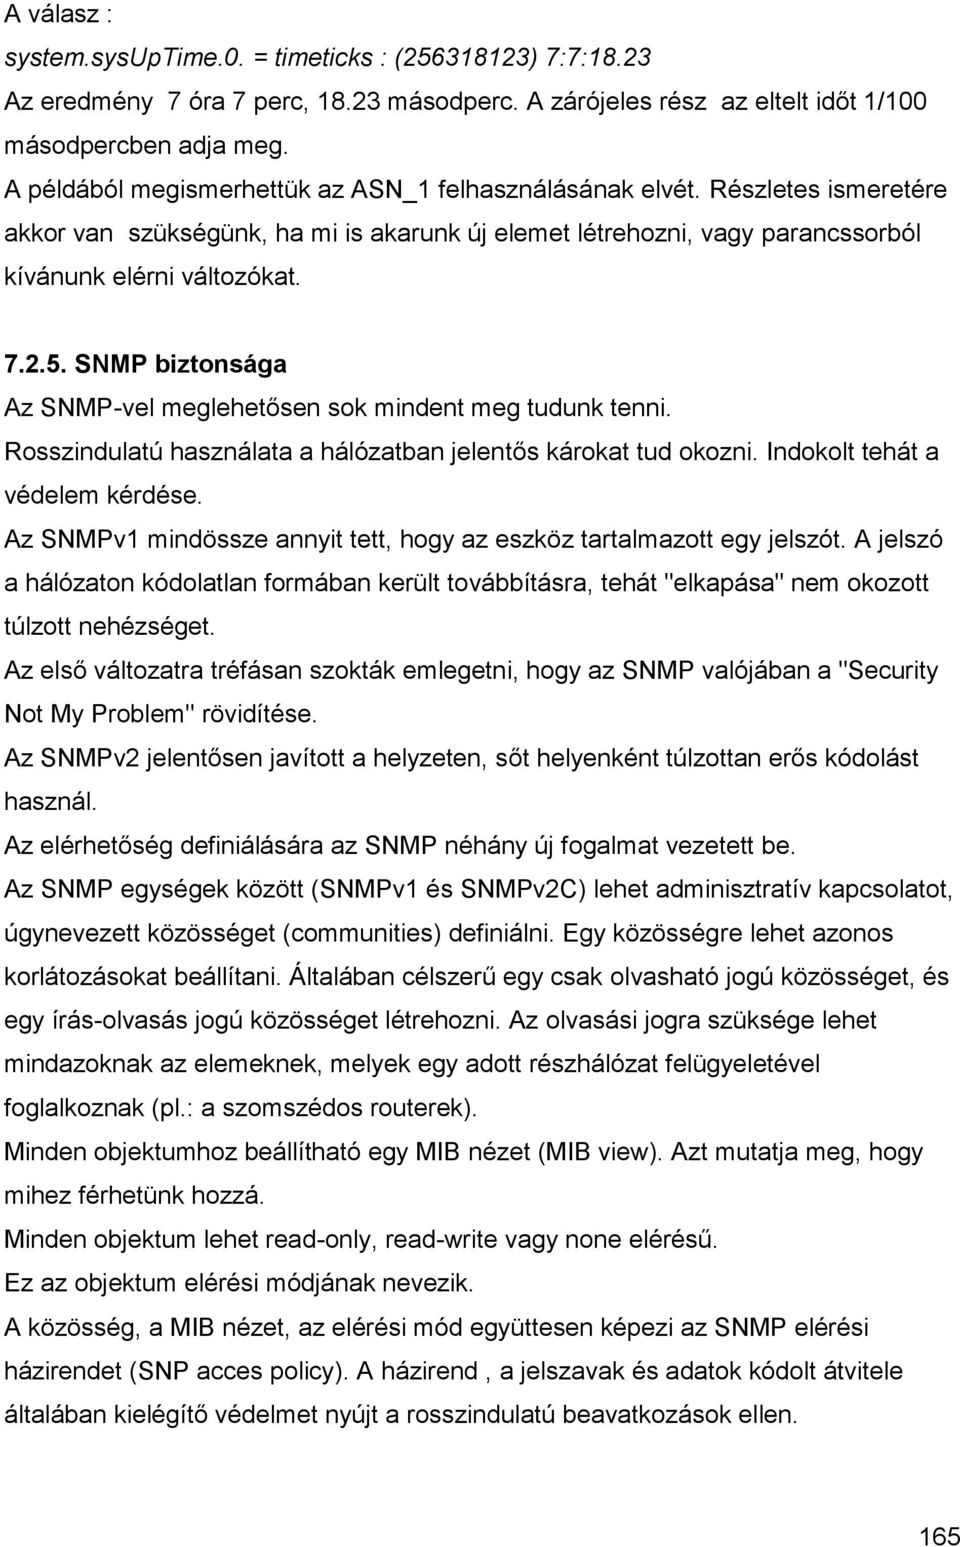 SNMP biztonsága Az SNMP-vel meglehetősen sok mindent meg tudunk tenni. Rosszindulatú használata a hálózatban jelentős károkat tud okozni. Indokolt tehát a védelem kérdése.